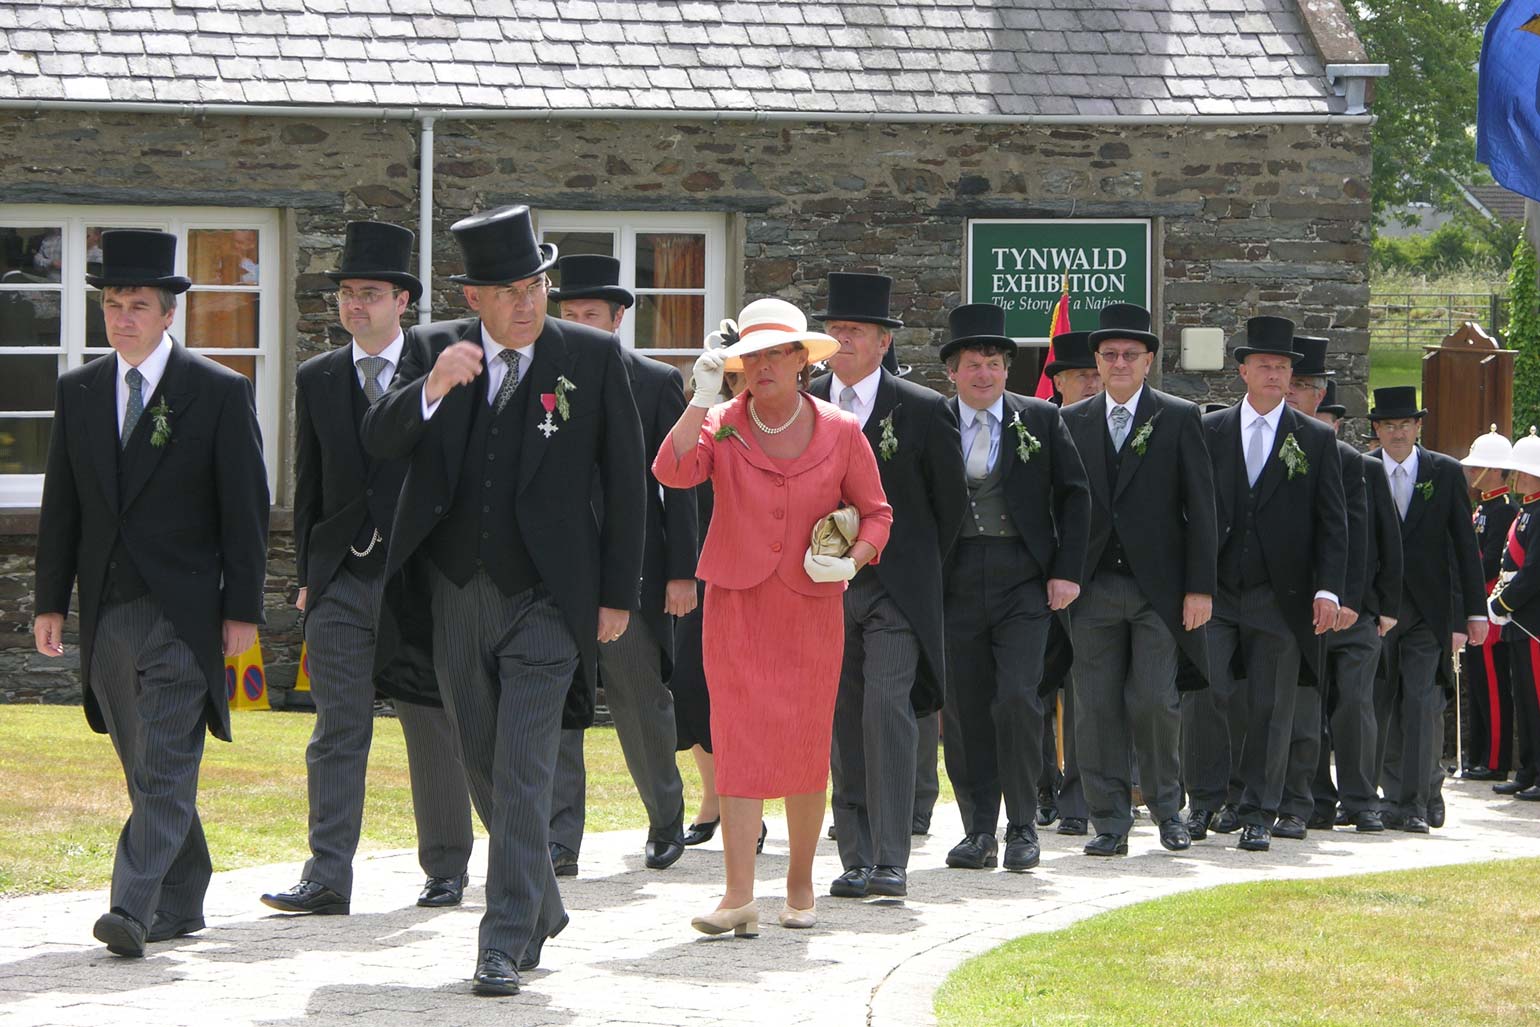 Isle of Man - Tynwald Day